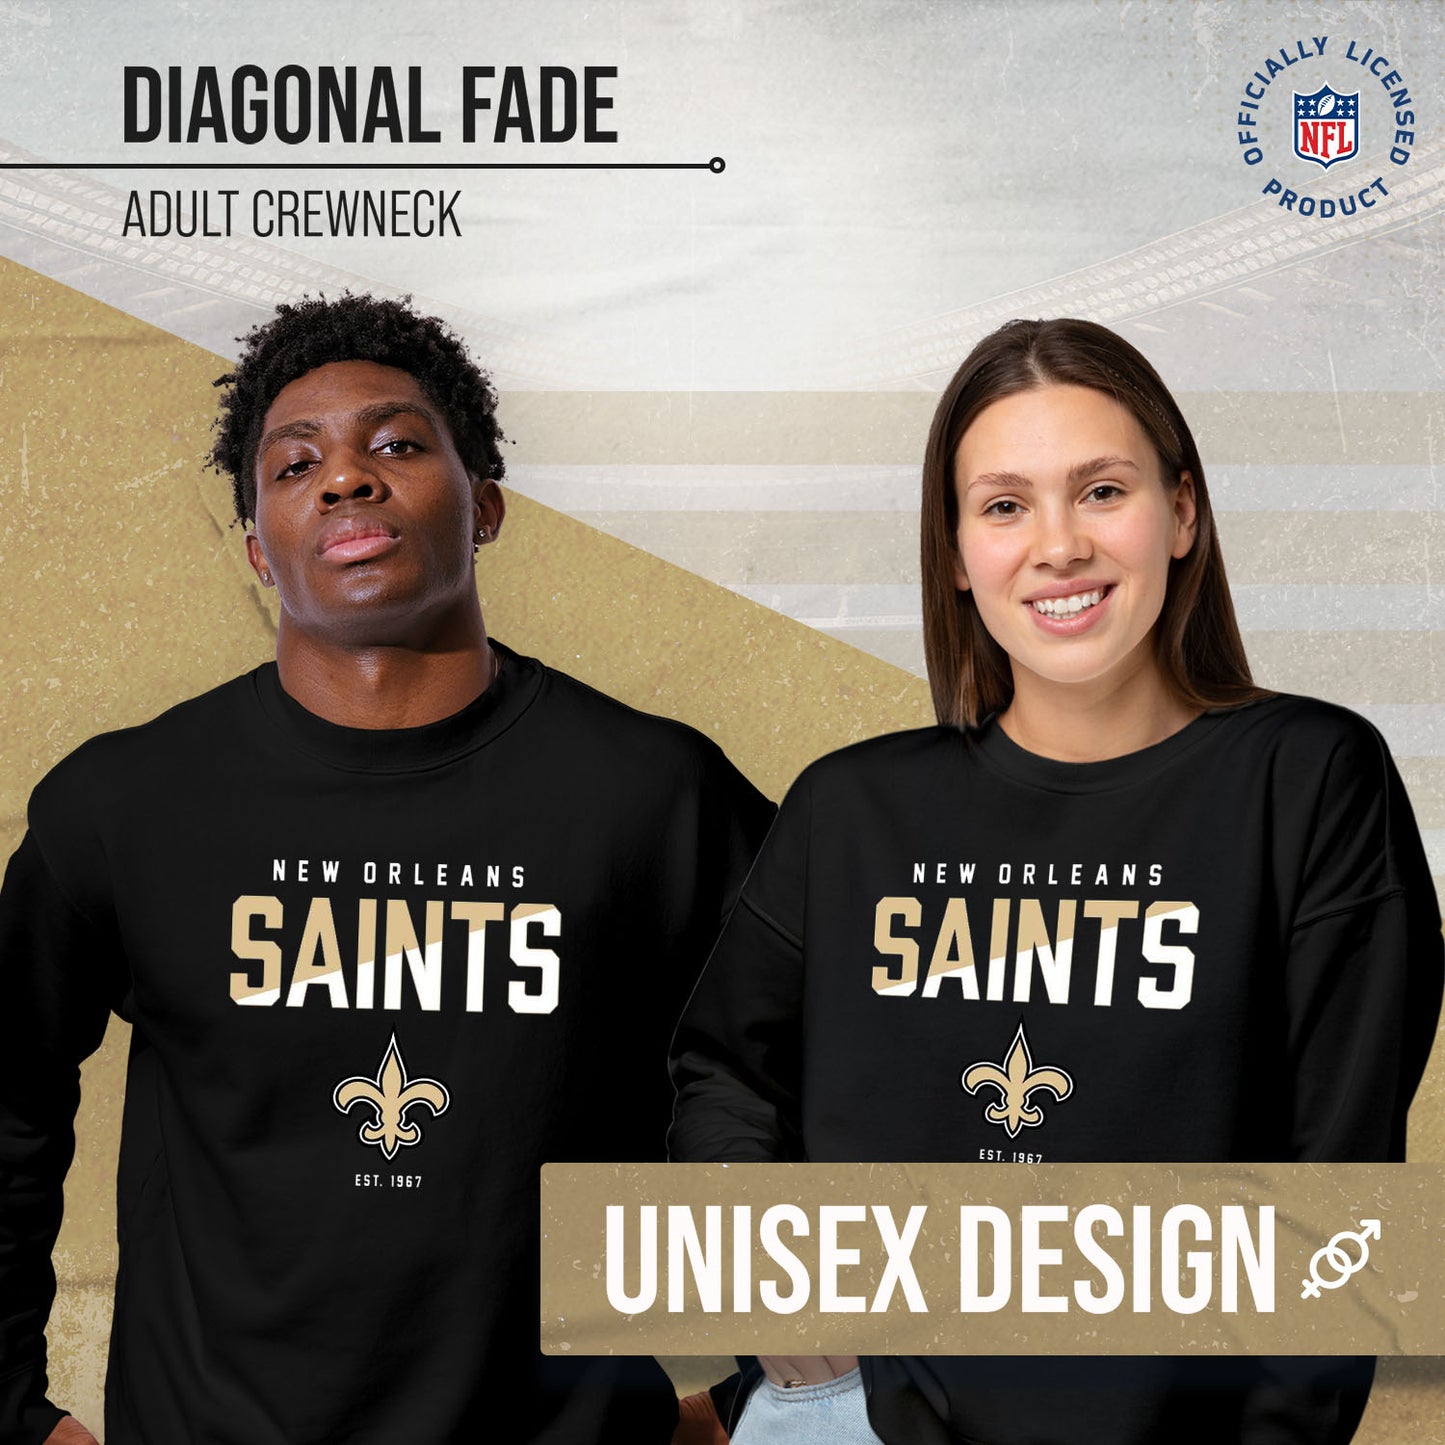 New Orleans Saints Adult NFL Diagonal Fade Color Block Crewneck Sweatshirt - Black